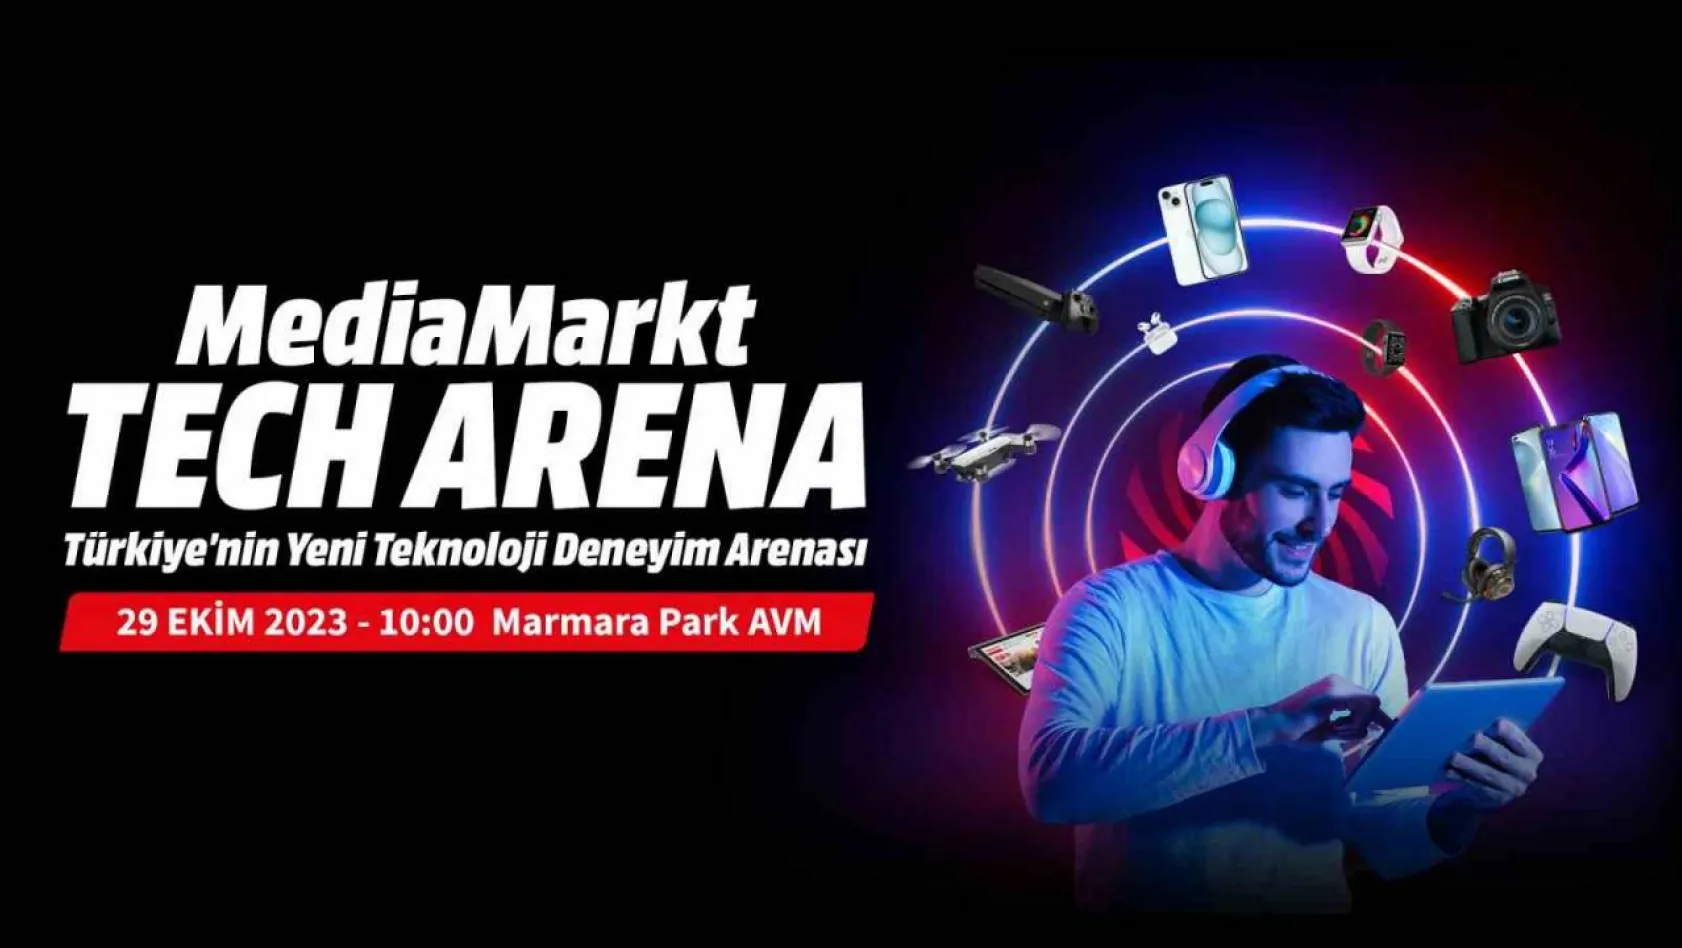 MediaMarkt, Teknoloji Deneyimi Mağazası Tech Arena'yı özel fırsatlarla açacak